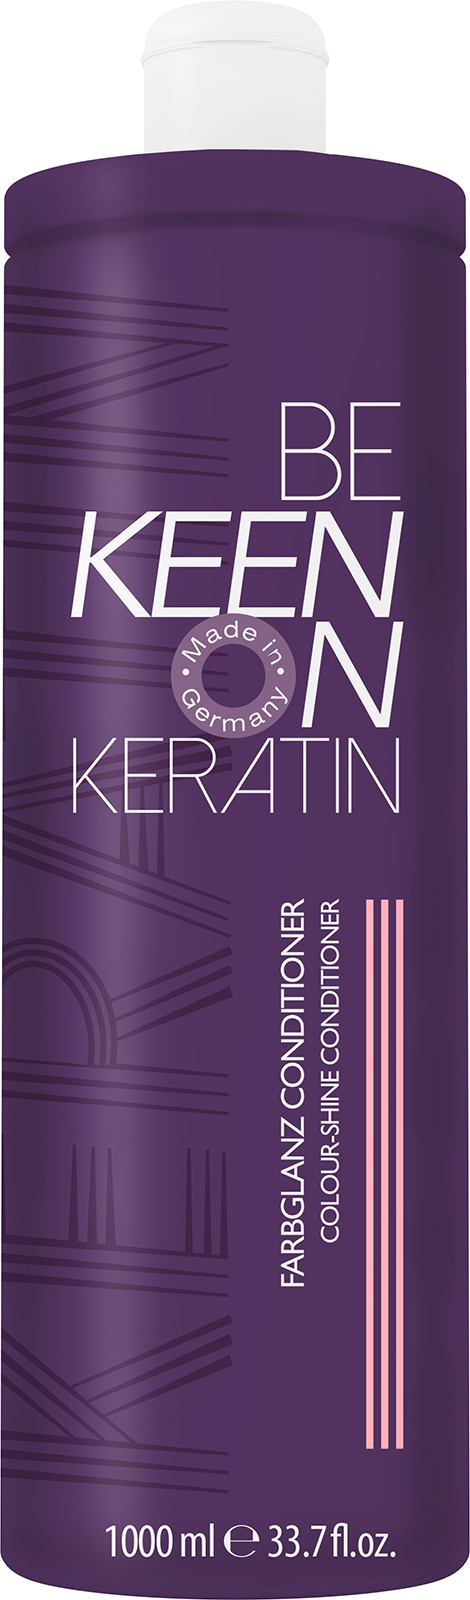 Кондиционеры для волос:  KEEN -  Кератин-кондиционер Стойкость цвета FARBGLANZ CONDITIONER  (1000 мл)